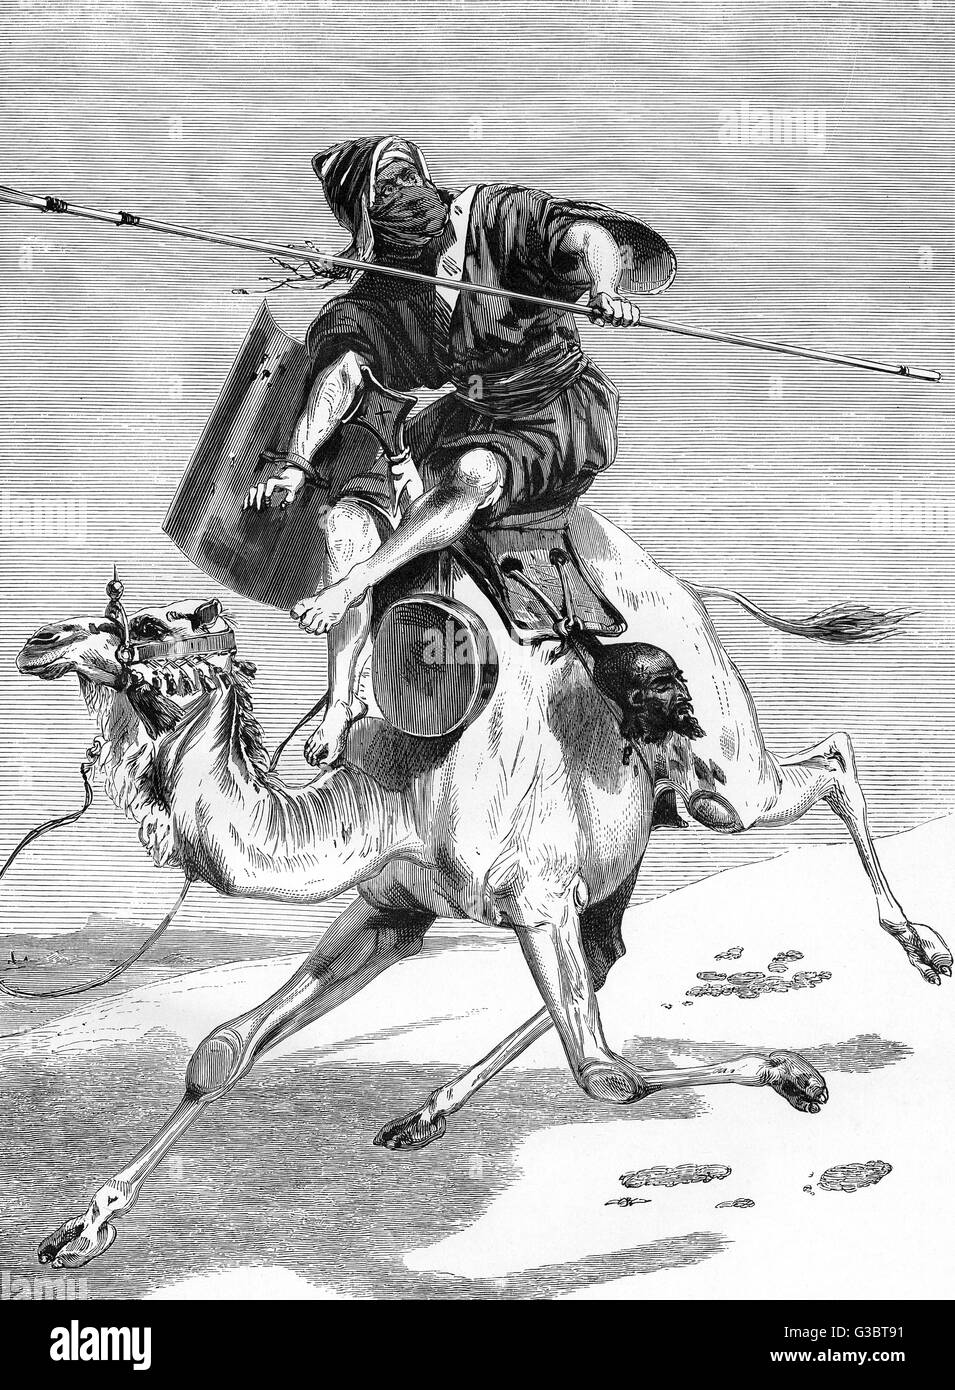 Tuareg Warrior - Afrique du Nord Banque D'Images